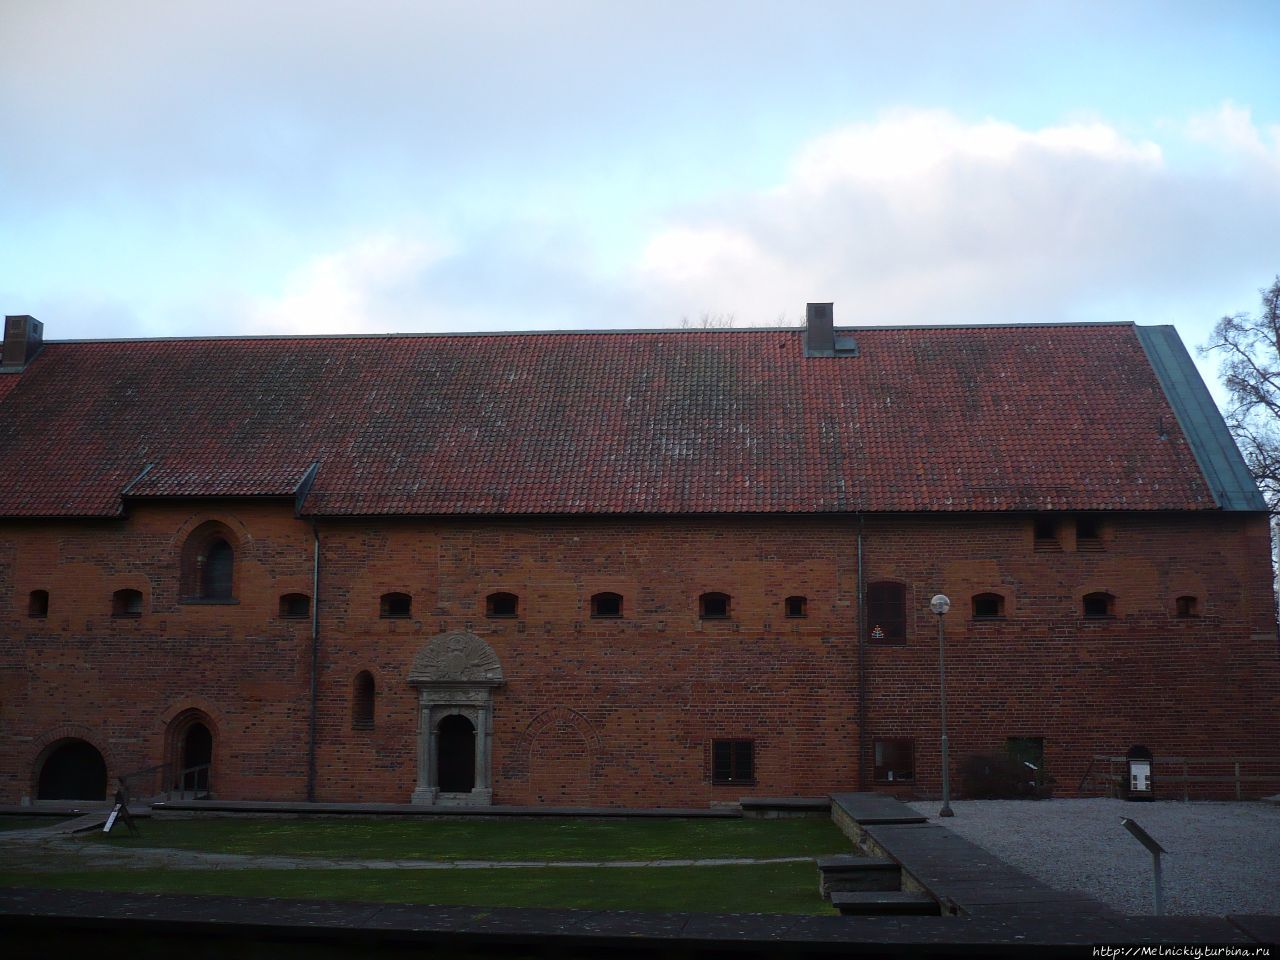 Монастырь Святой Бригитты Вадстена, Швеция